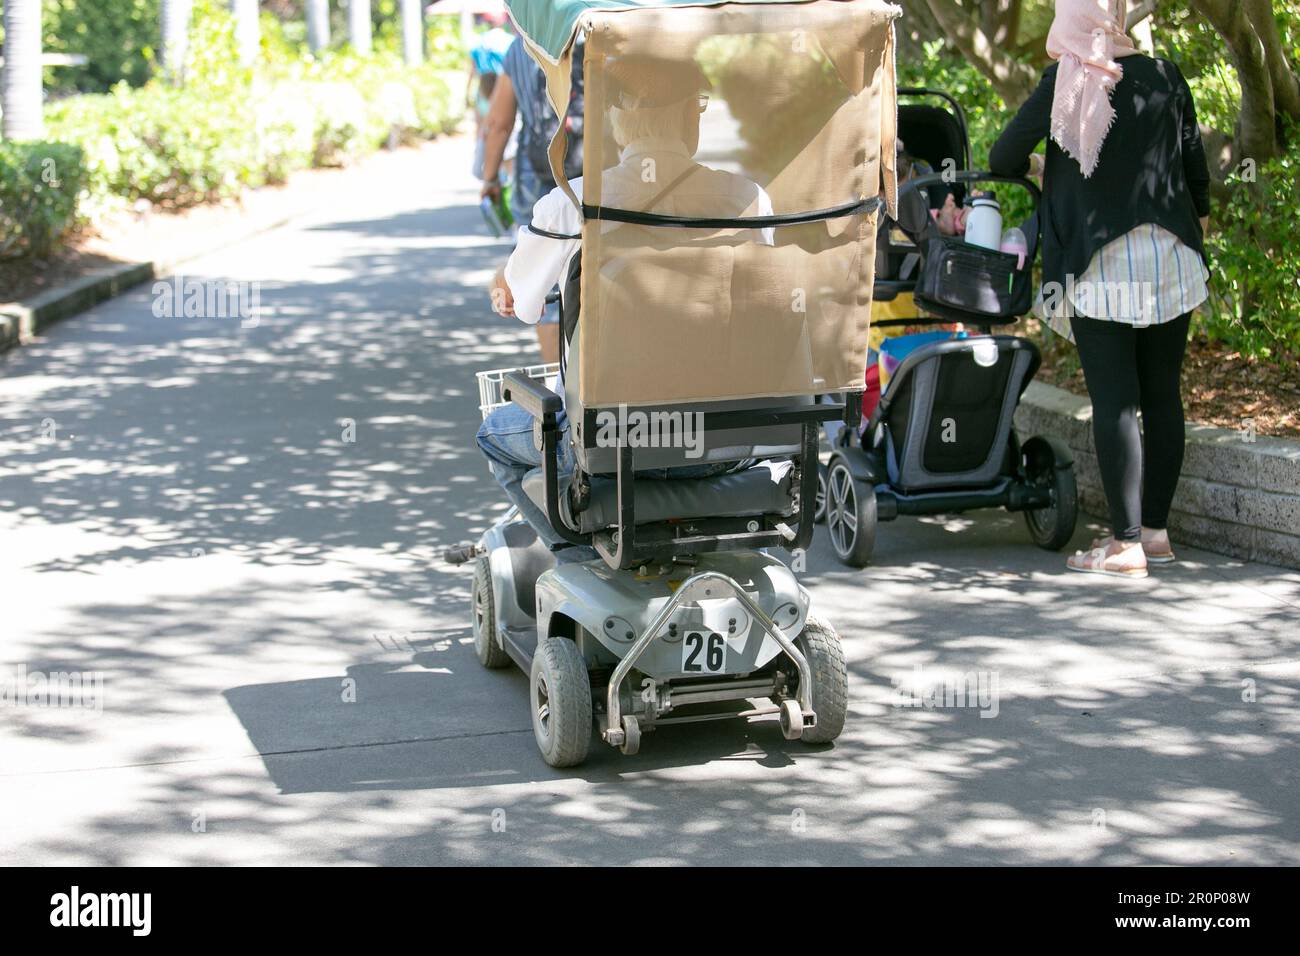 San Diego, Kalifornien, Vereinigte Staaten - 09-23-2021: Ein Blick auf einen Gast, der einen elektrischen Rollstuhlverleih benutzt, gesehen im San Diego Zoo. Stockfoto